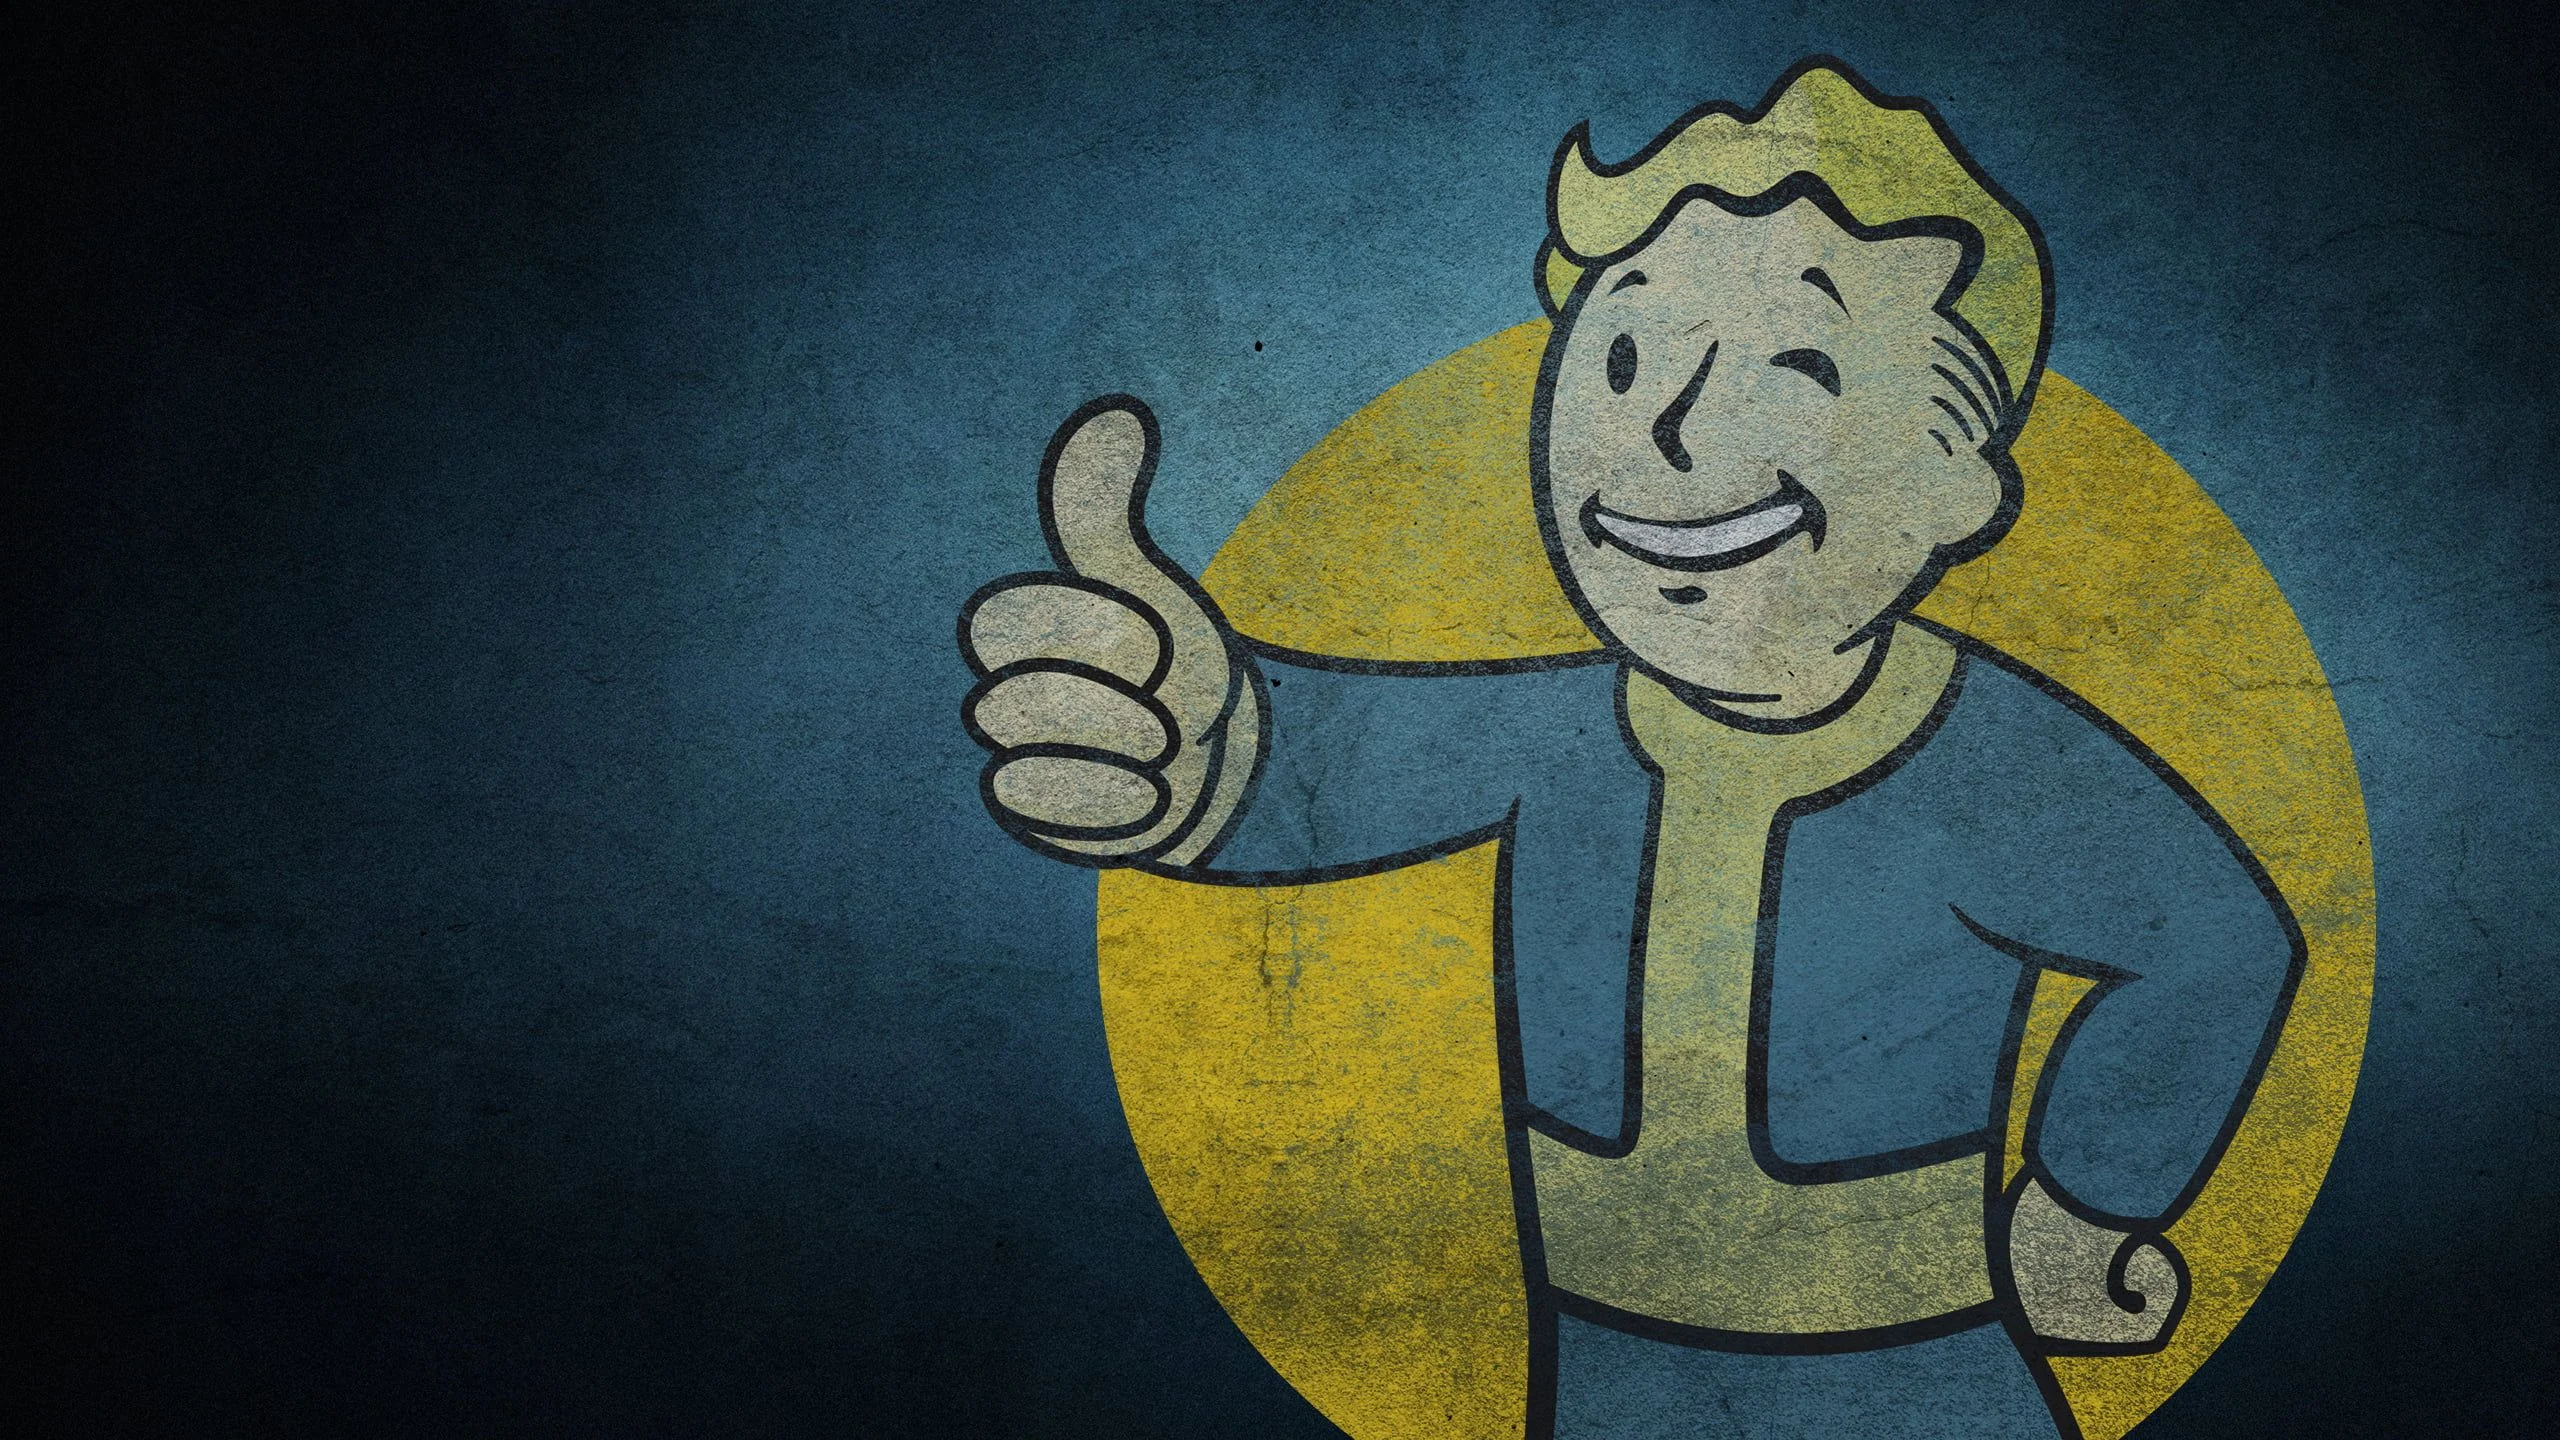 Съемки сериала по культовой игре Fallout начались!